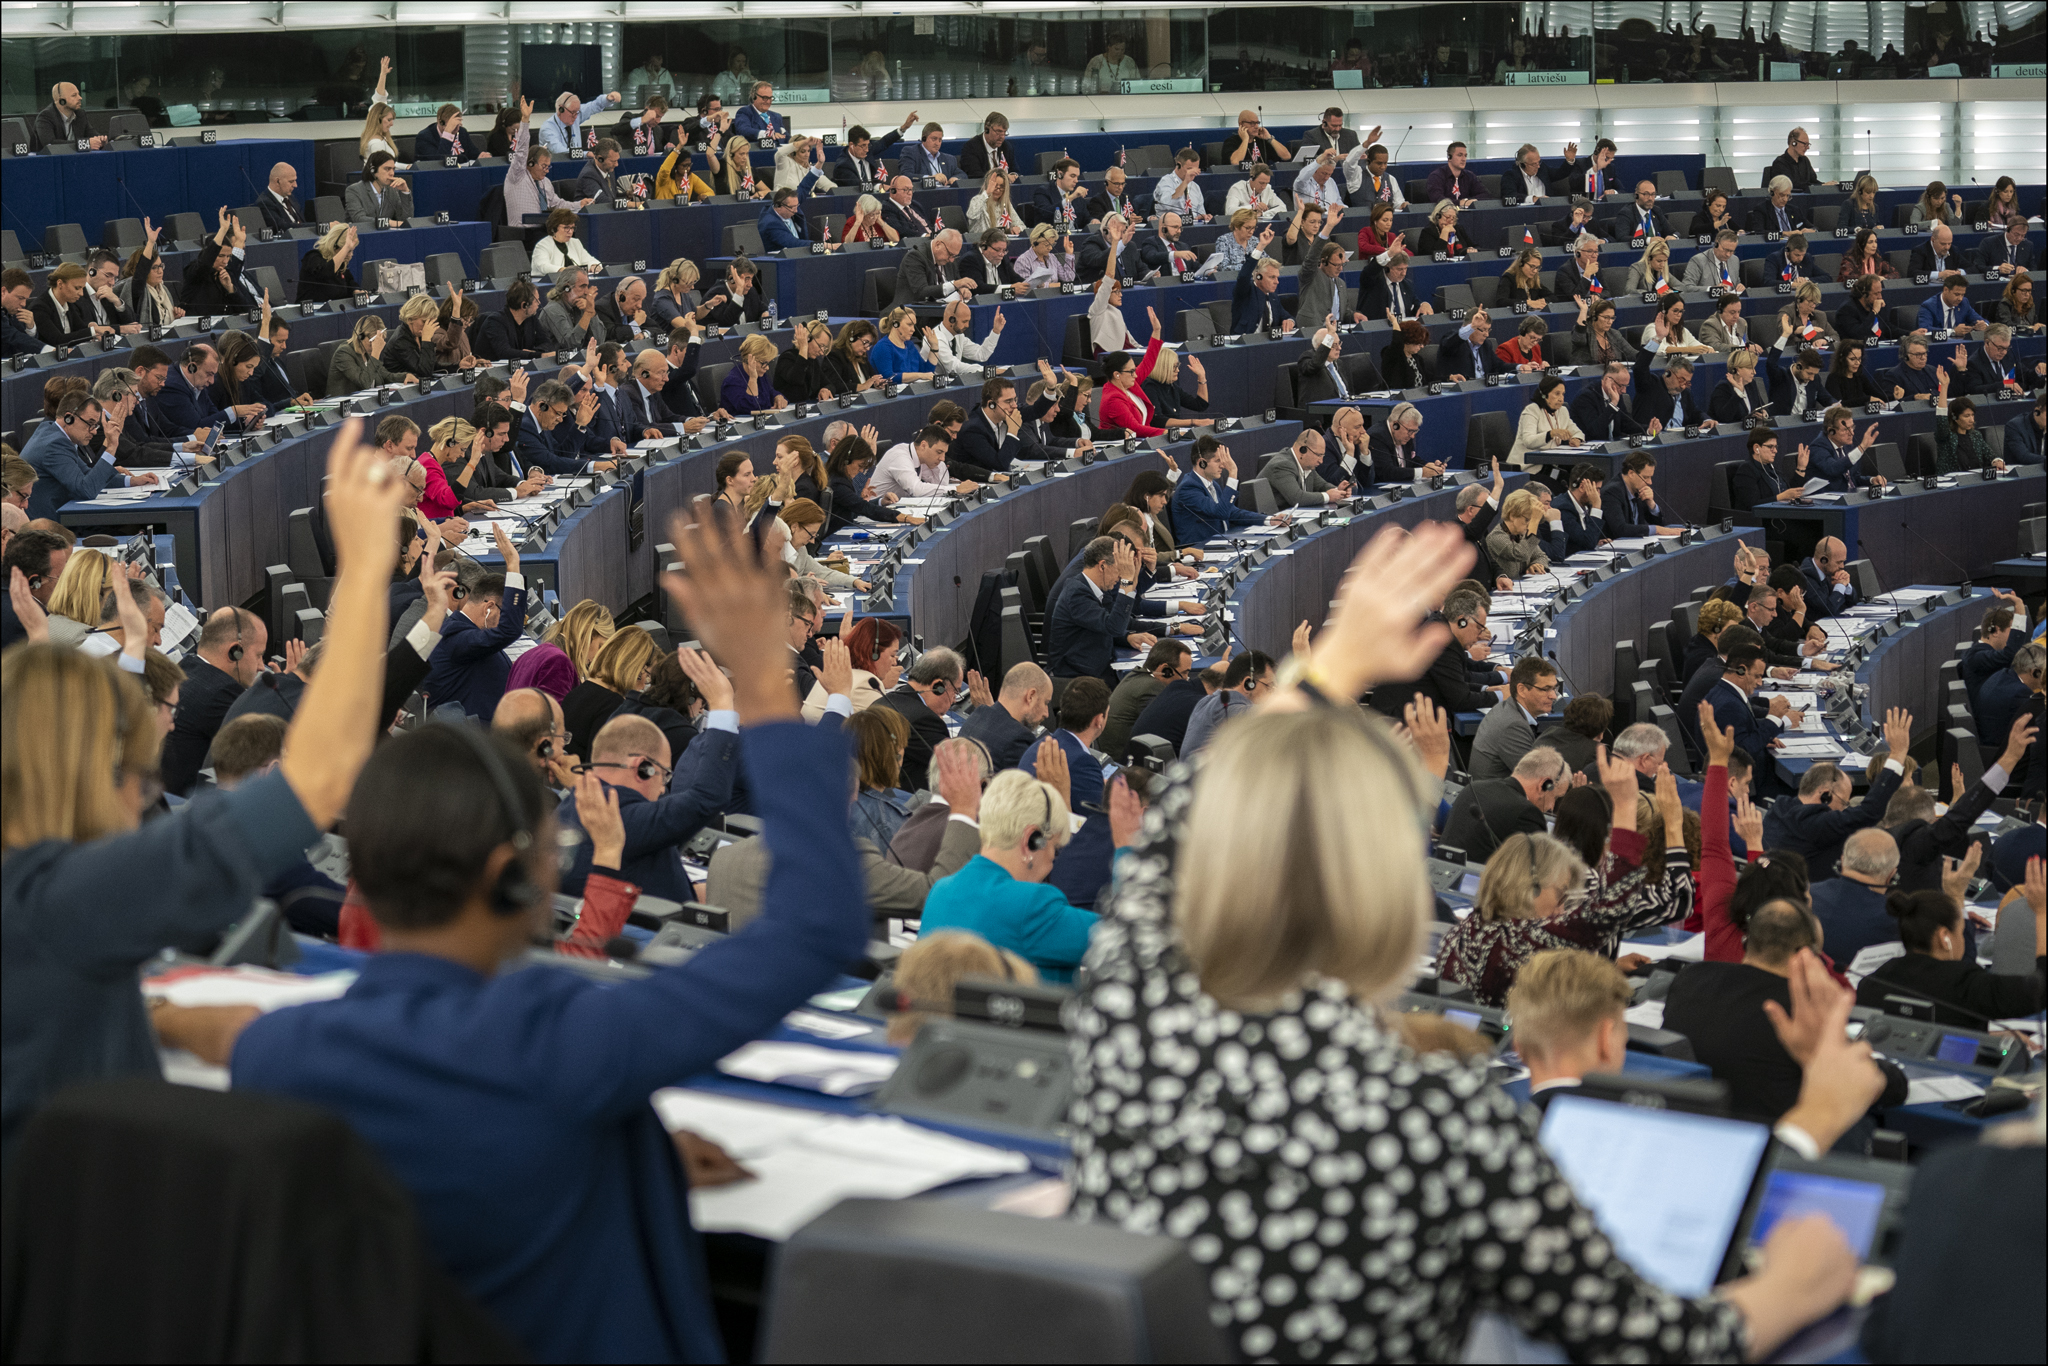 Bruxelles approva il Fit for 55: come funzionerà la transizione energetica  europea - L'INDIPENDENTE